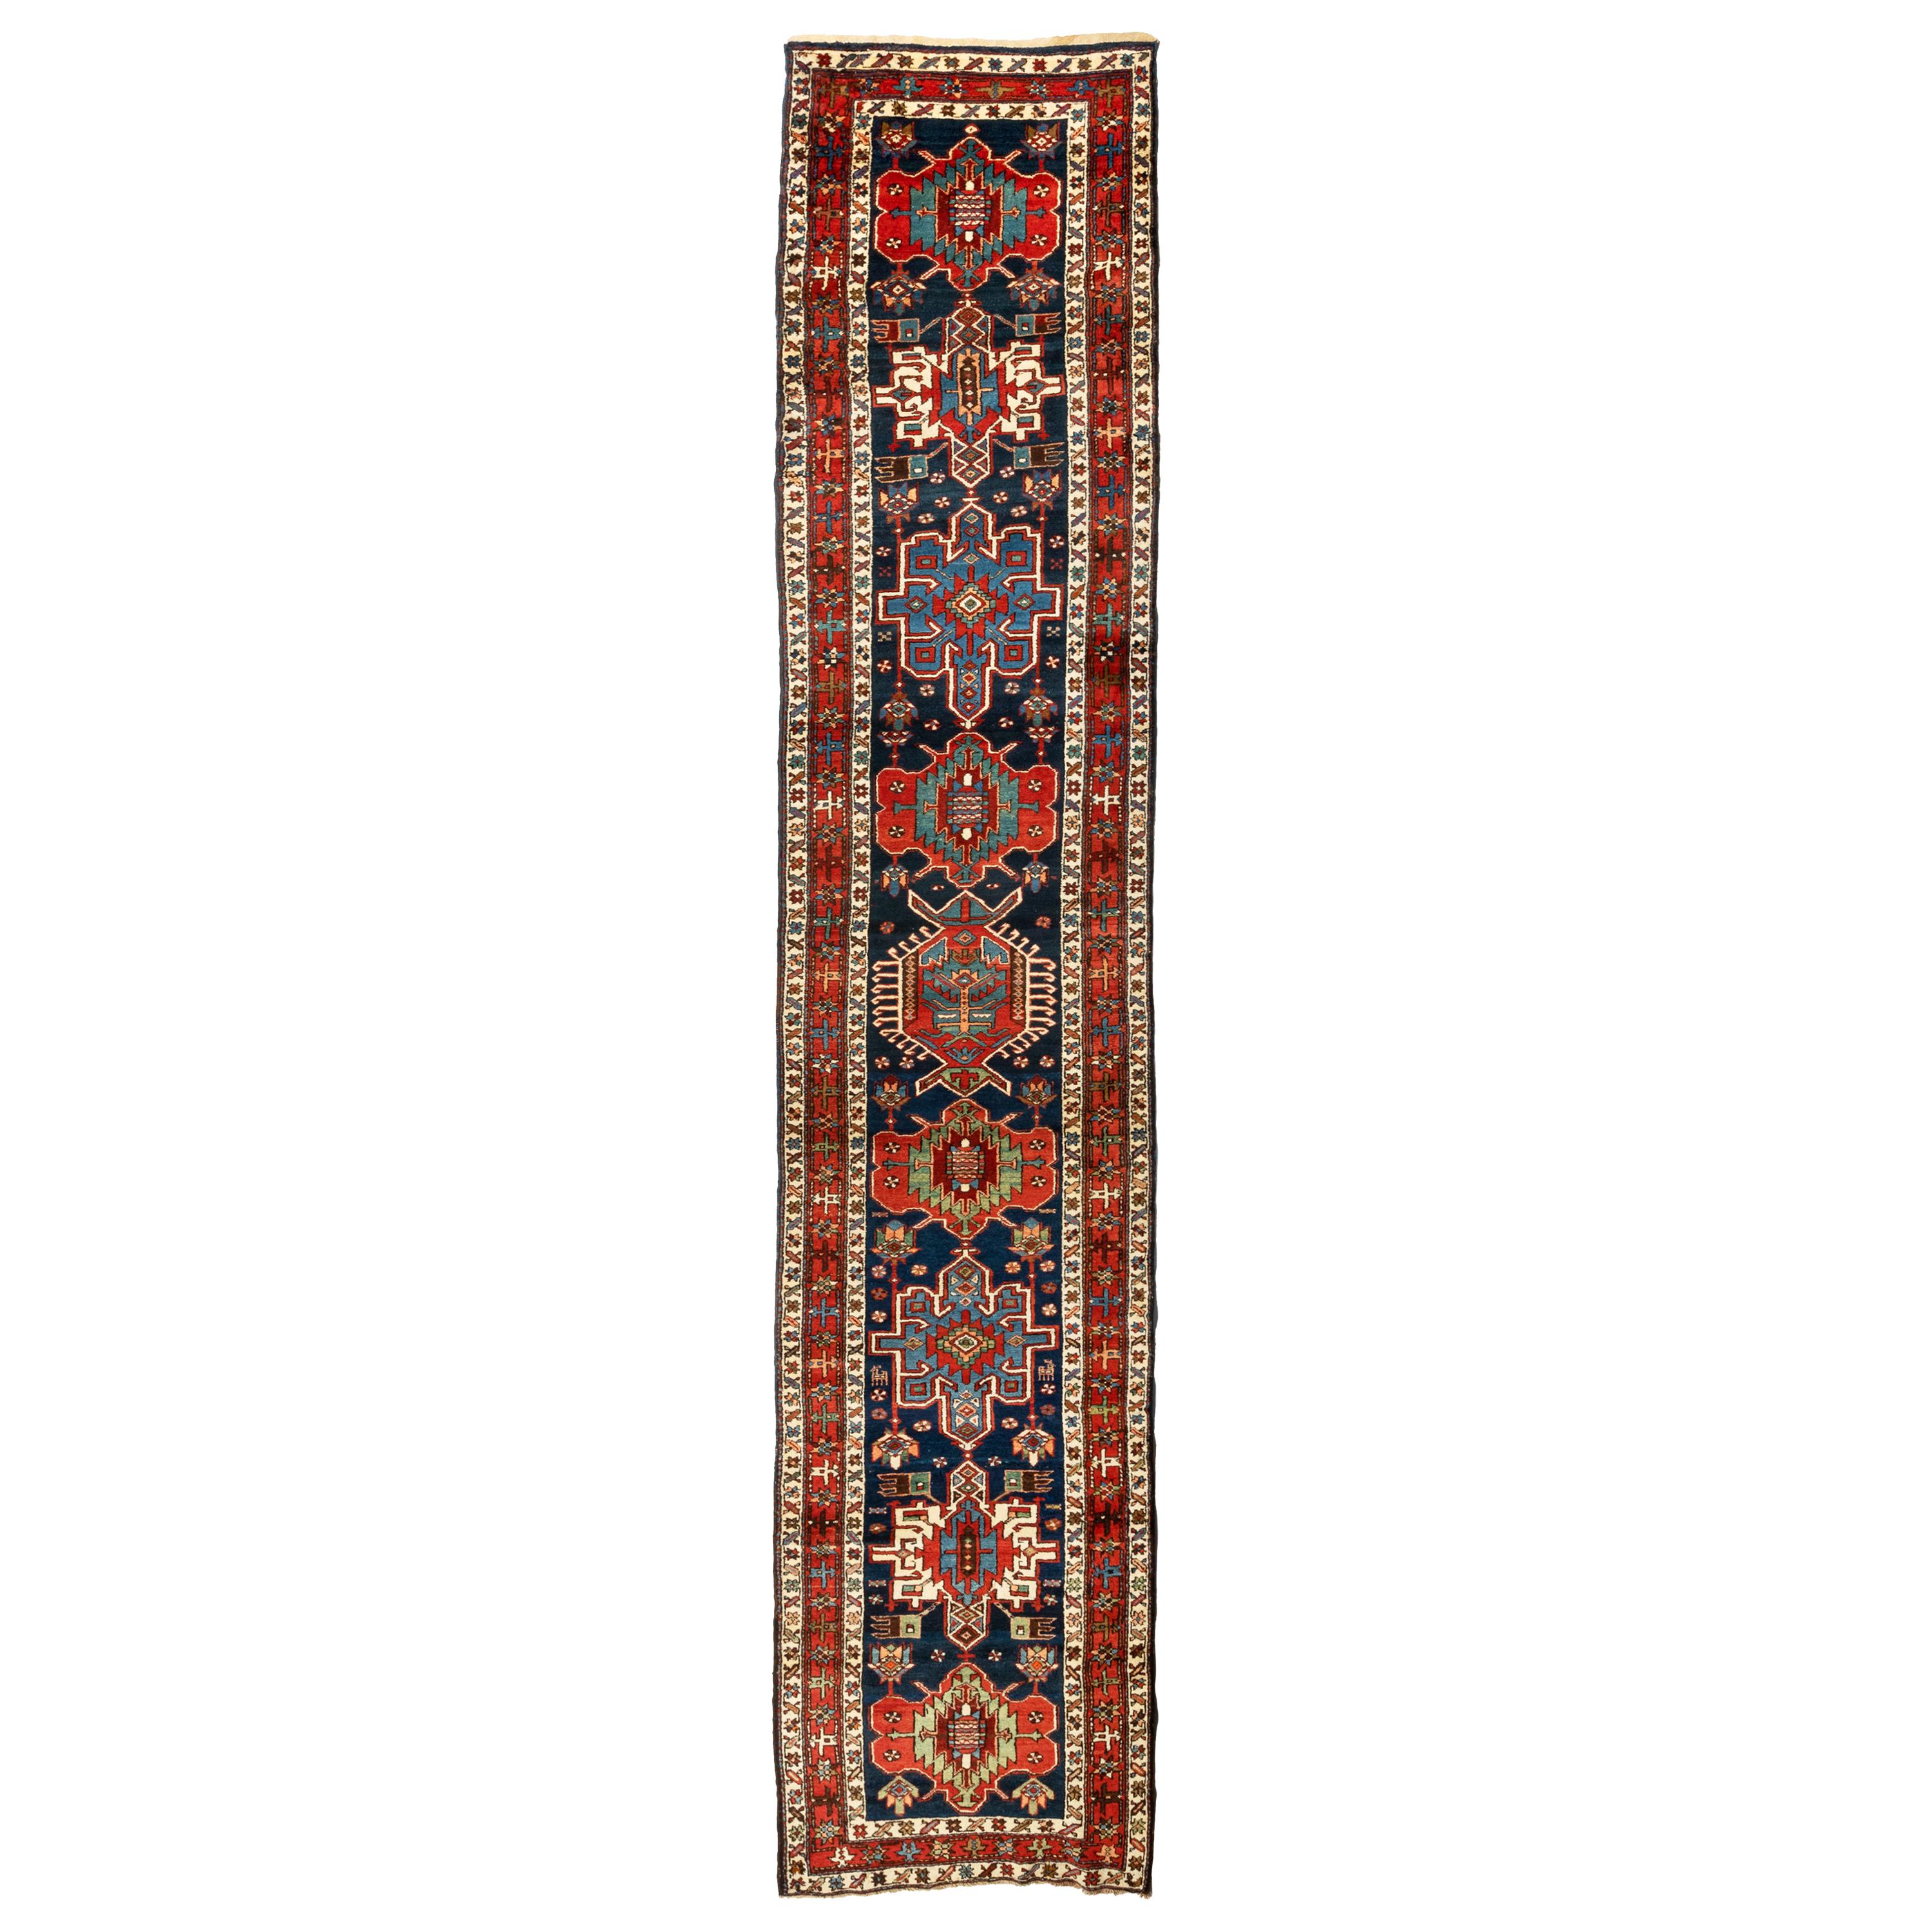 Antike Rot Grün Marineblau Stammes Persisch Karaja Läufer Teppich c. 1900-1910